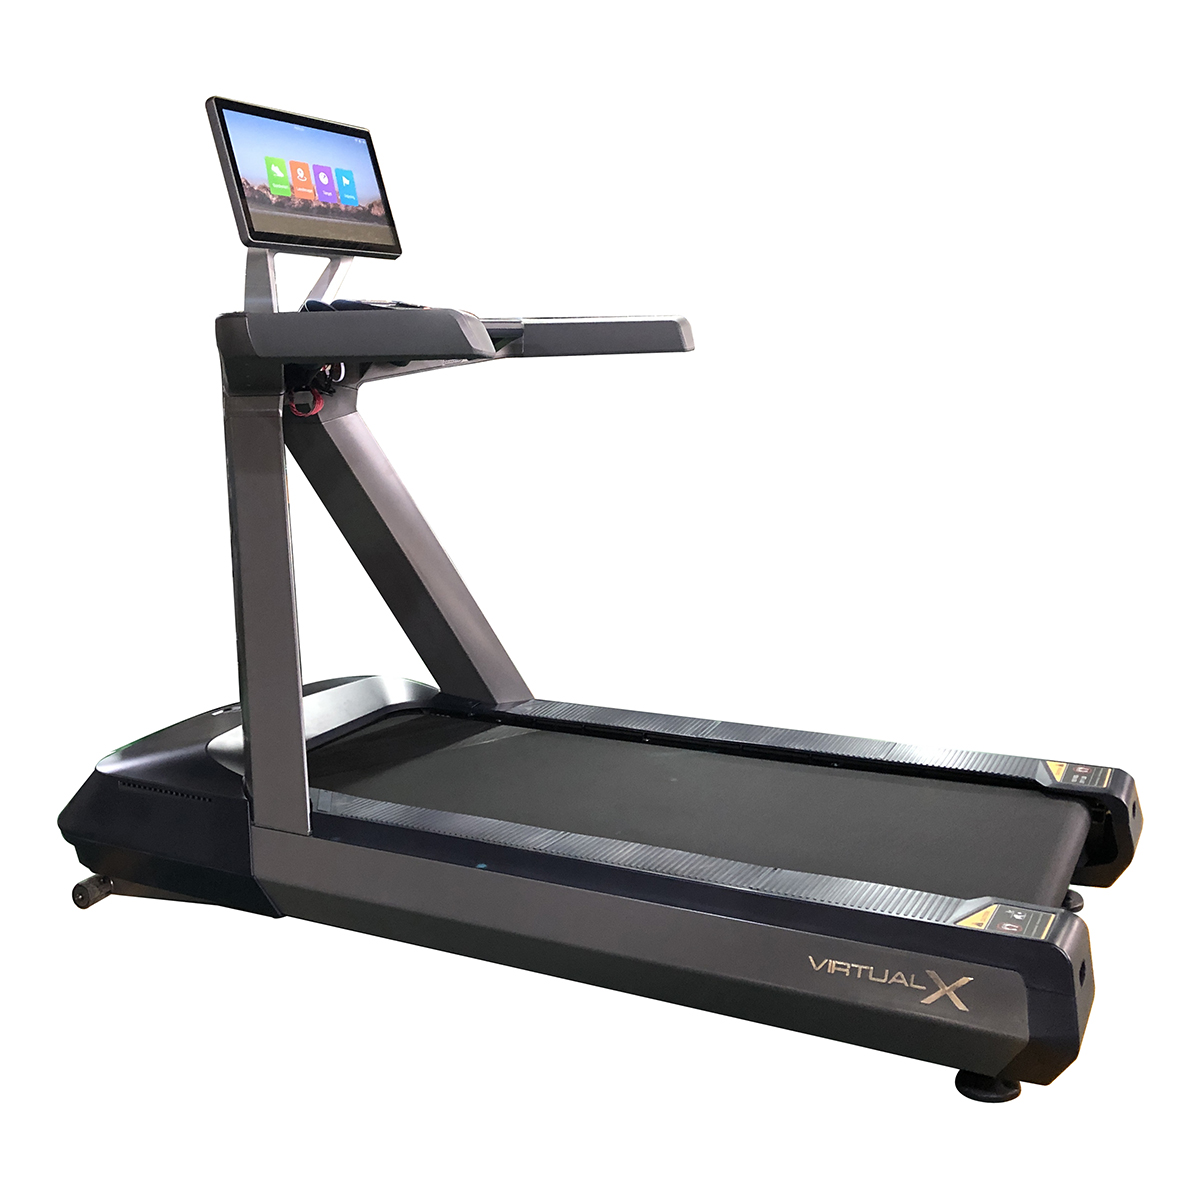 Virtual X – Heavy Duty Commercial Treadmill